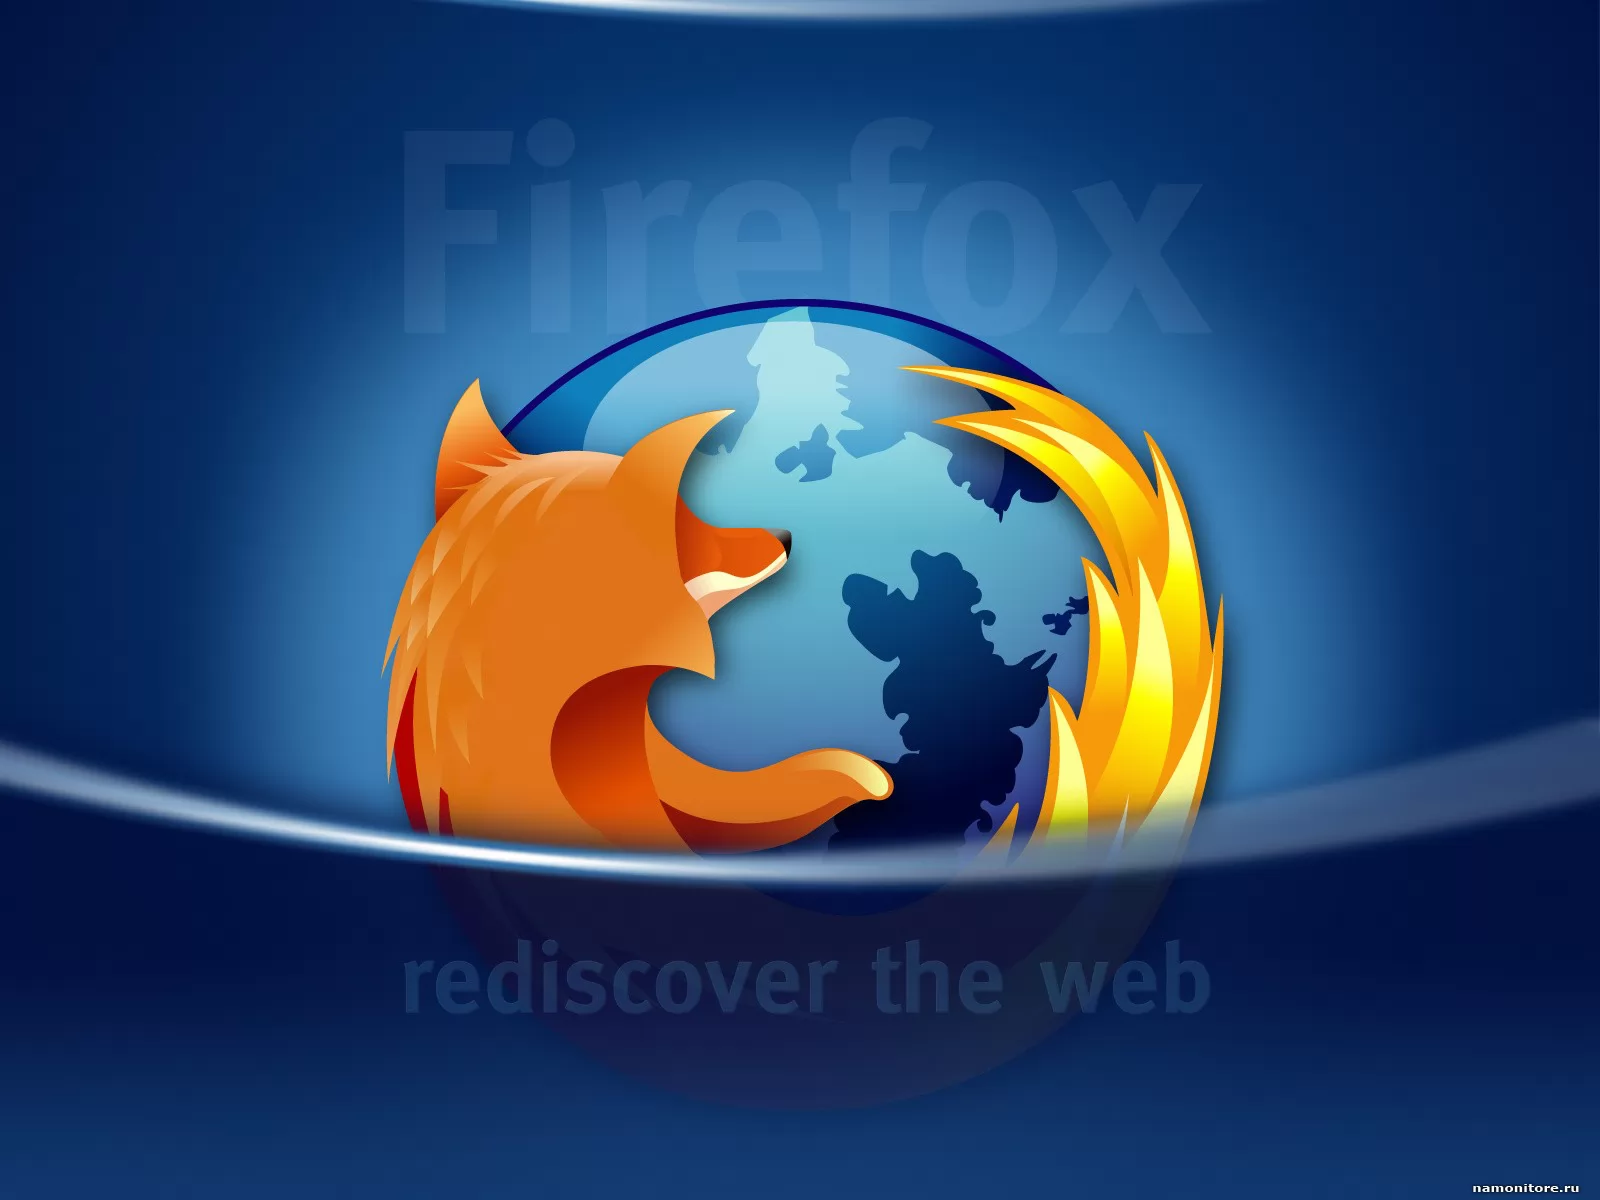 Mozilla FireFox, компьютеры и программы, рисованное, синее х